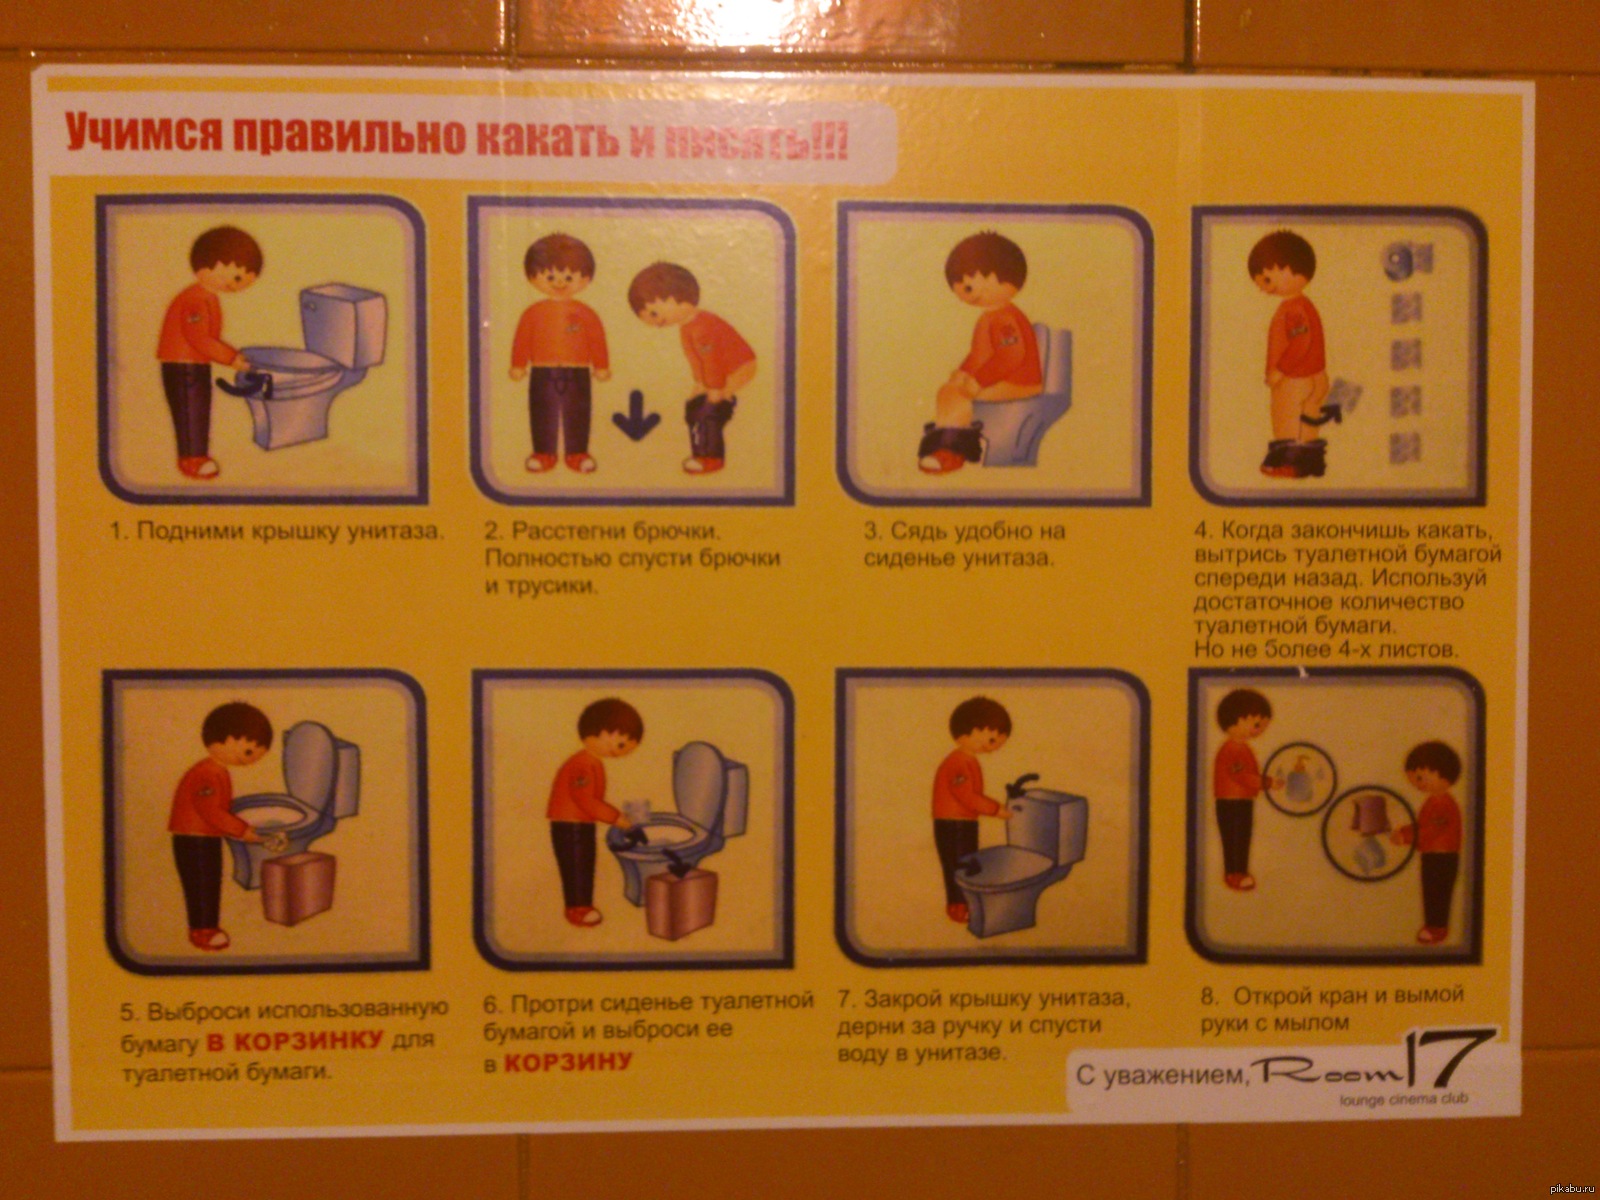 После туалета сильно. Инструкция как правильно какать. Инструкция для туалета. Правила пользования туалетом для детей. Алгоритм посещения туалета.